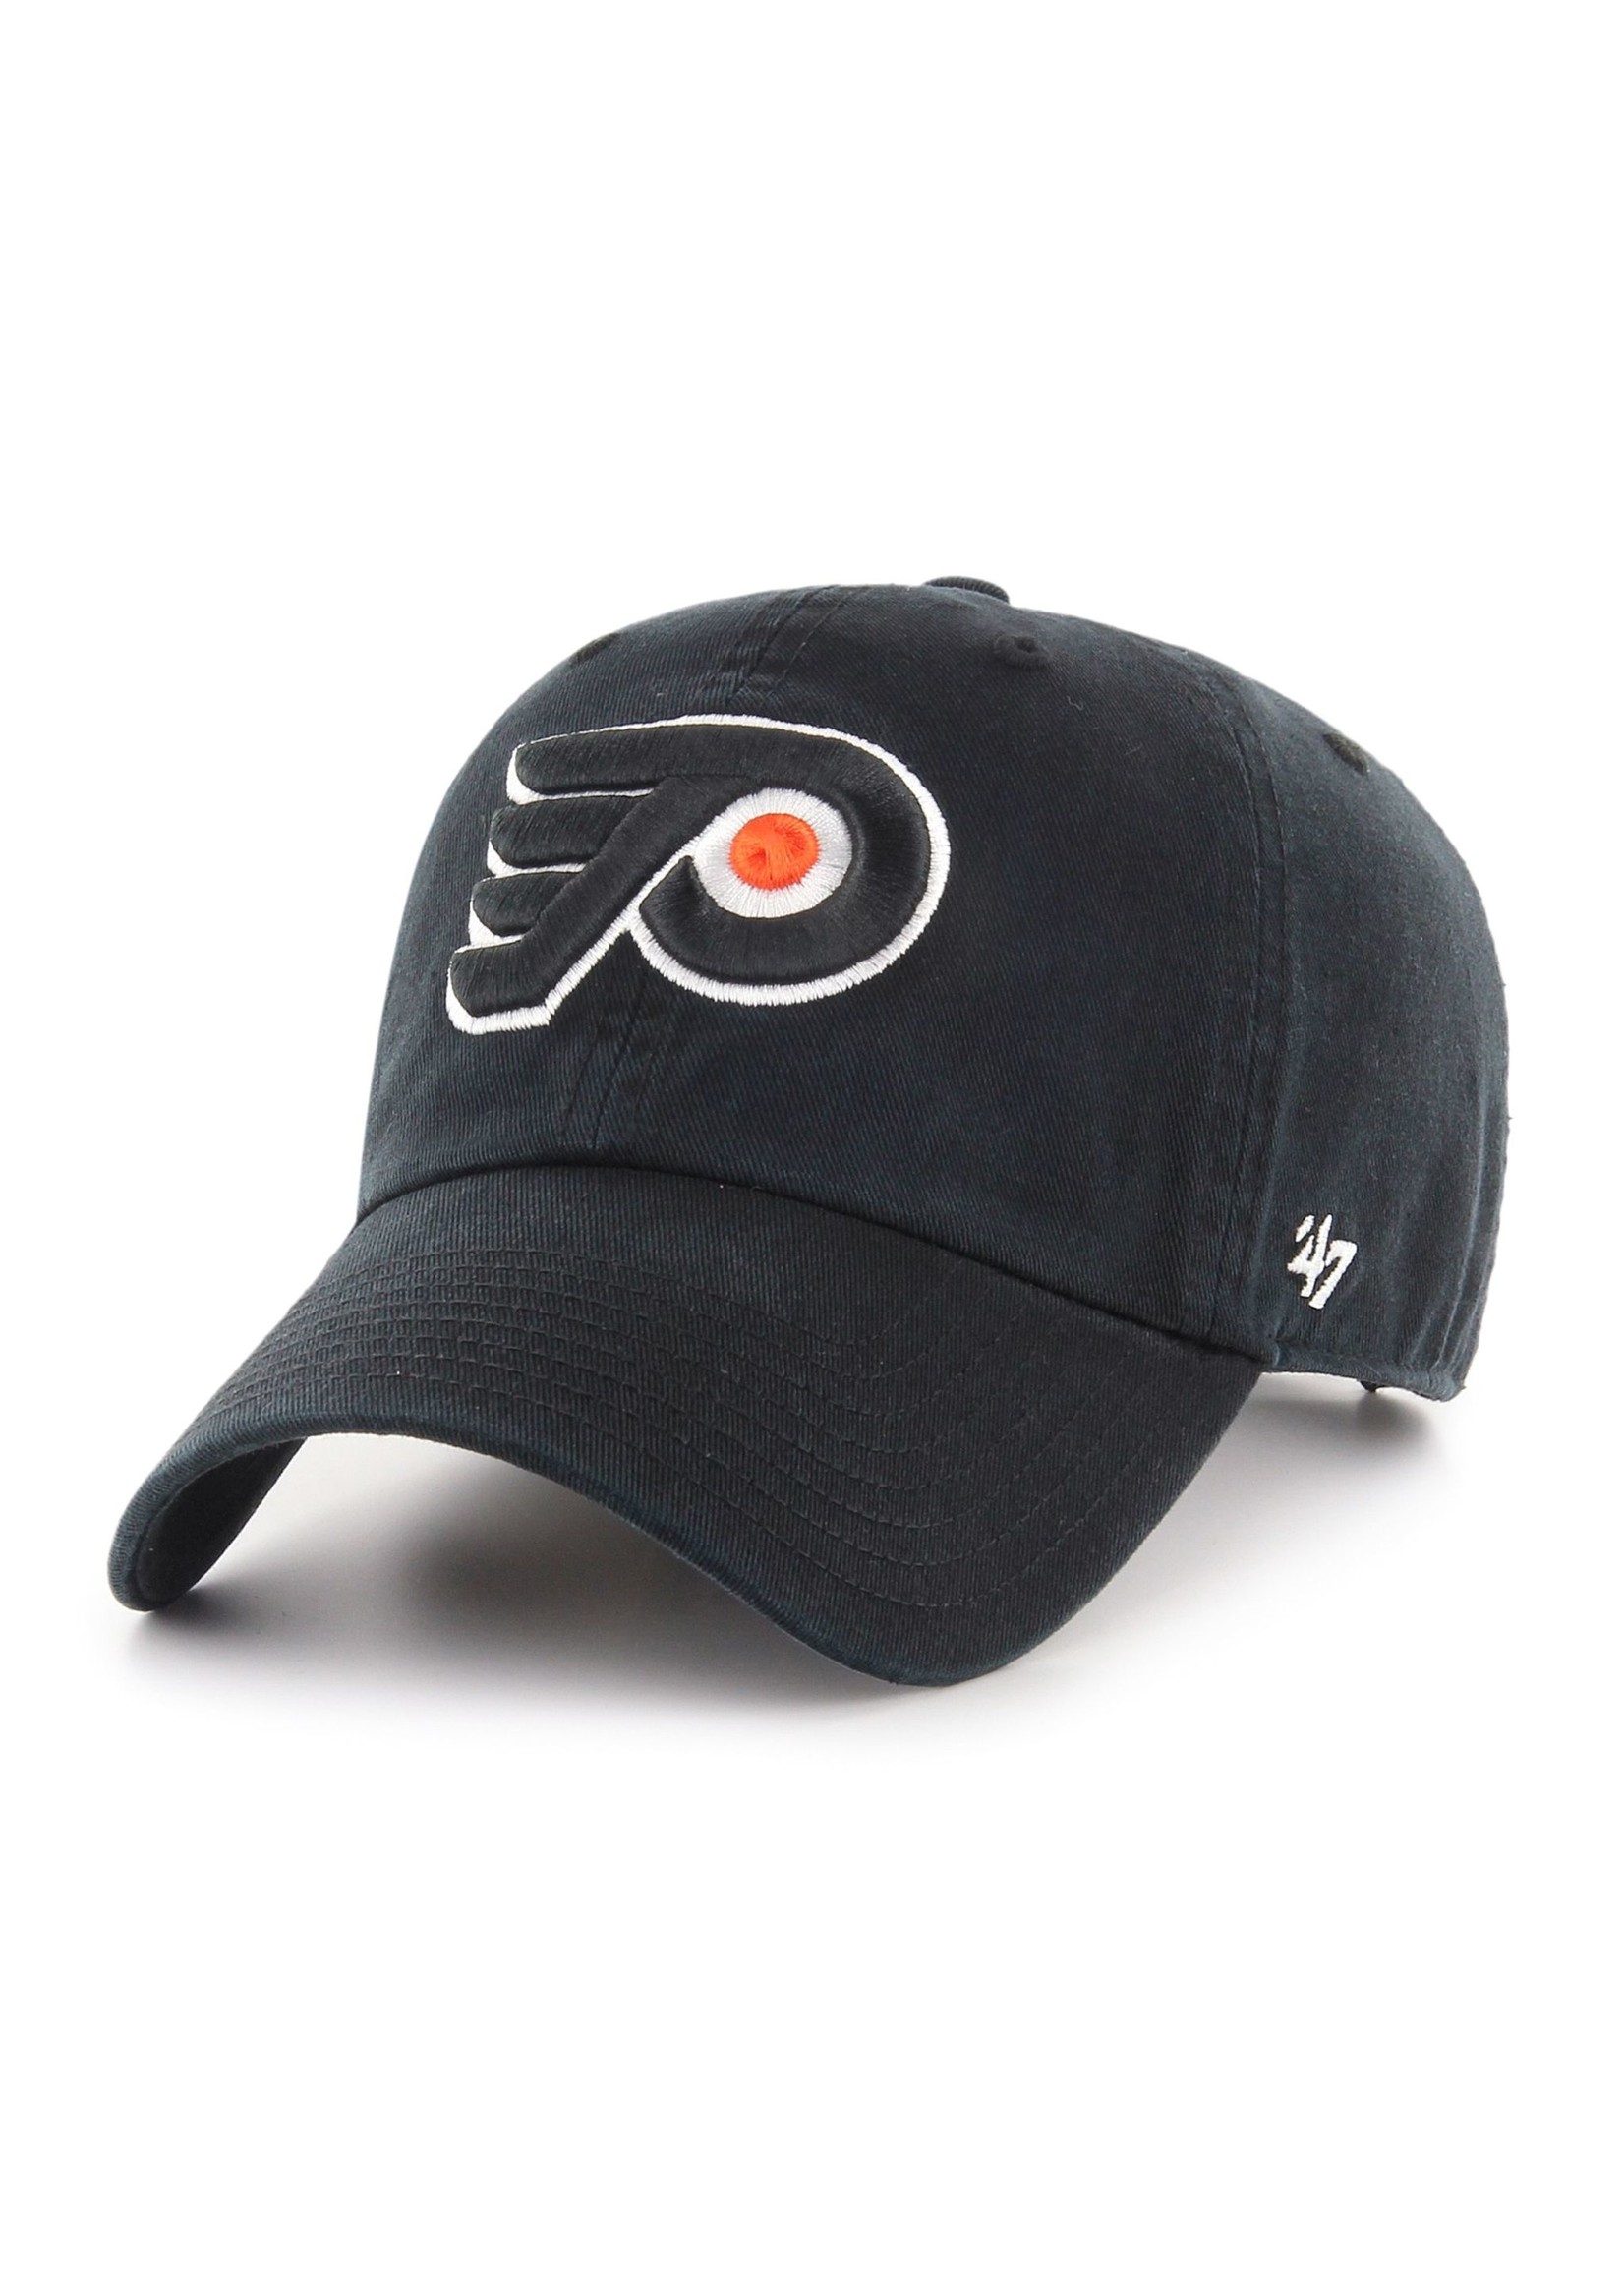 47 brand 47 casquette clean up noir Flyers Philadelphie